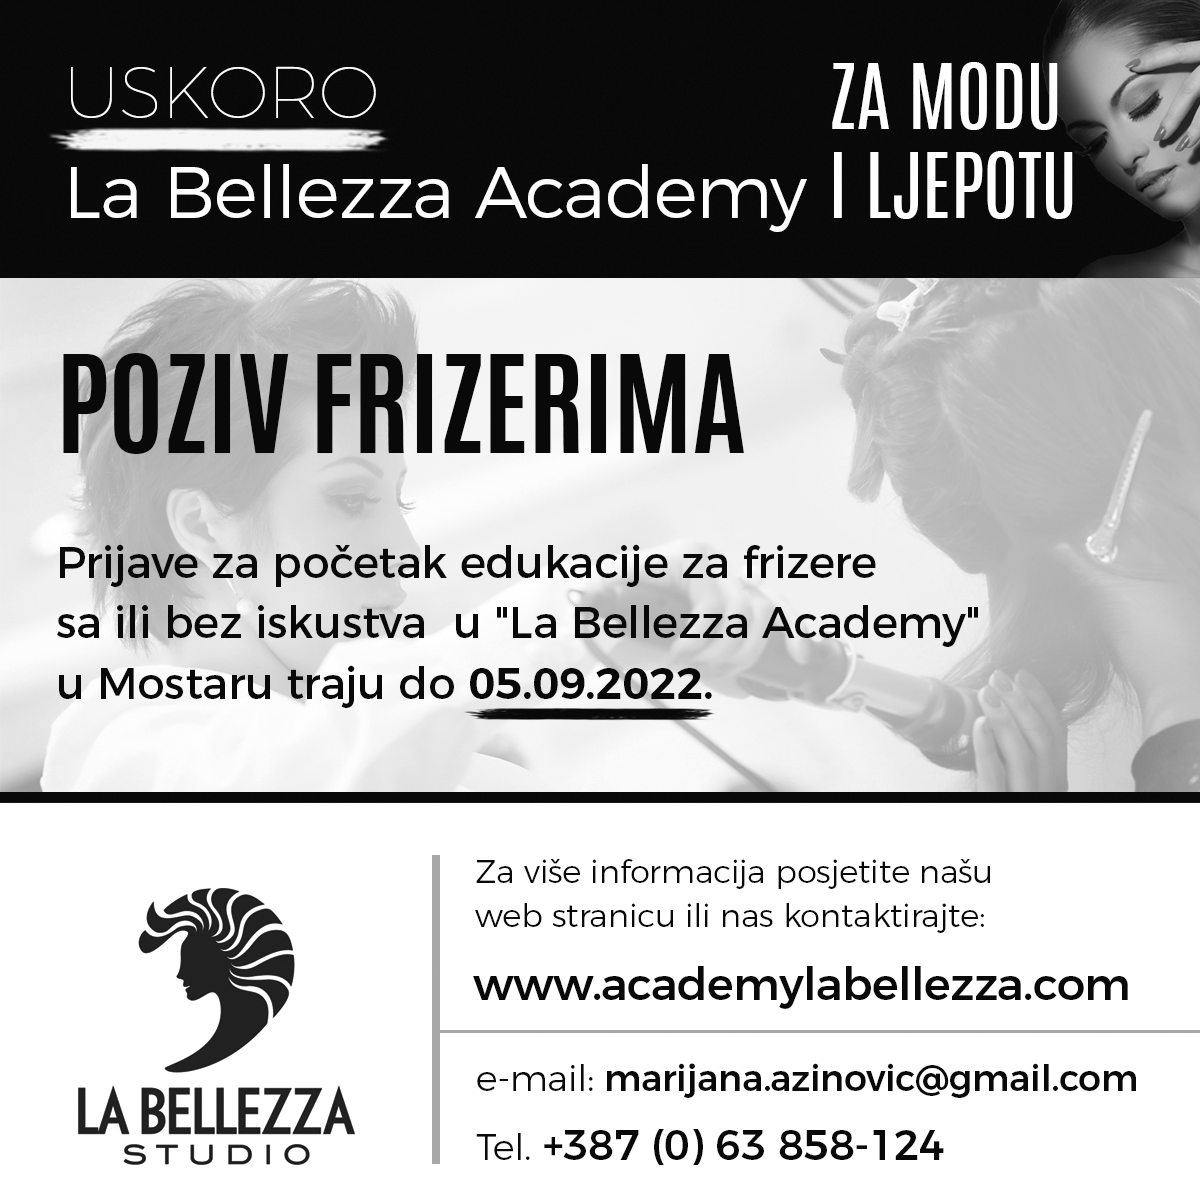 Poziv frizerima: Uskoro početak "La Bellezza Academy"u Mostaru